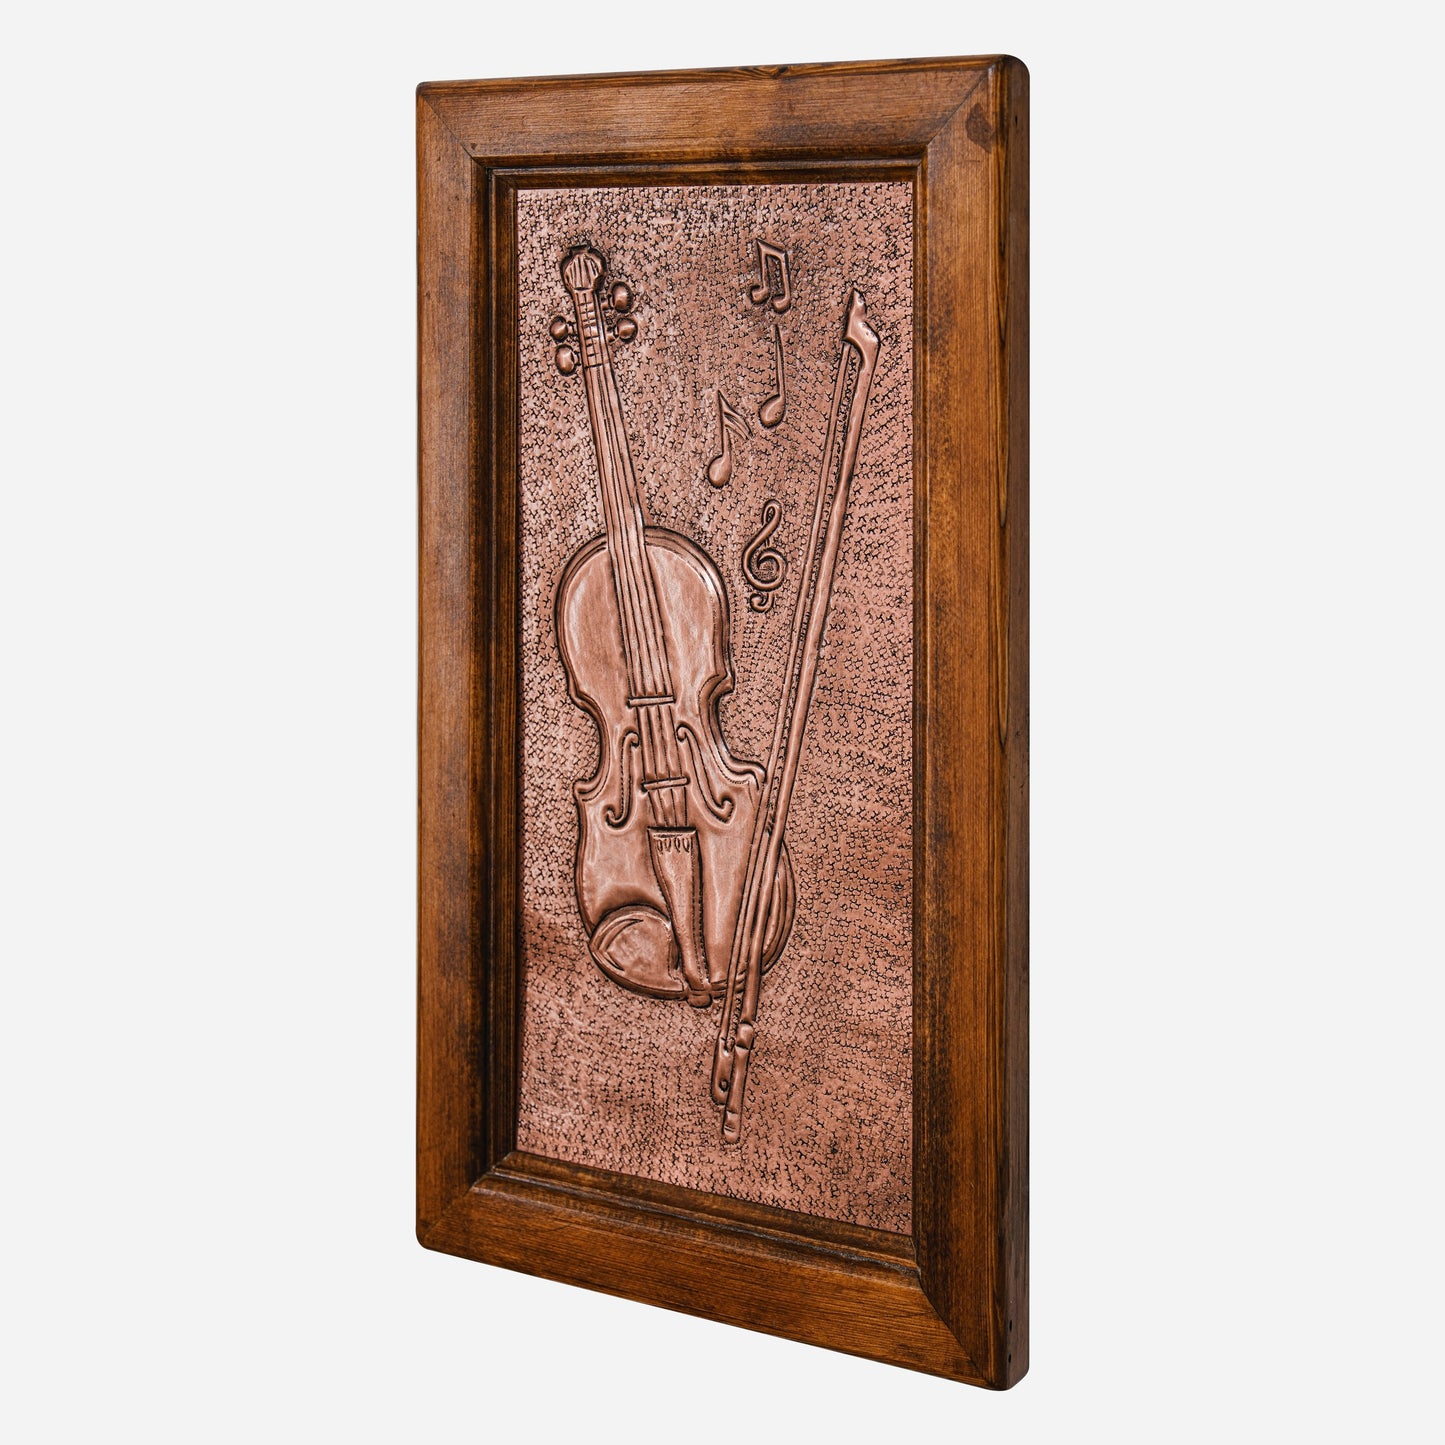 Framed Copper Artwork (Violin, Fiddlestick and Music Notes)